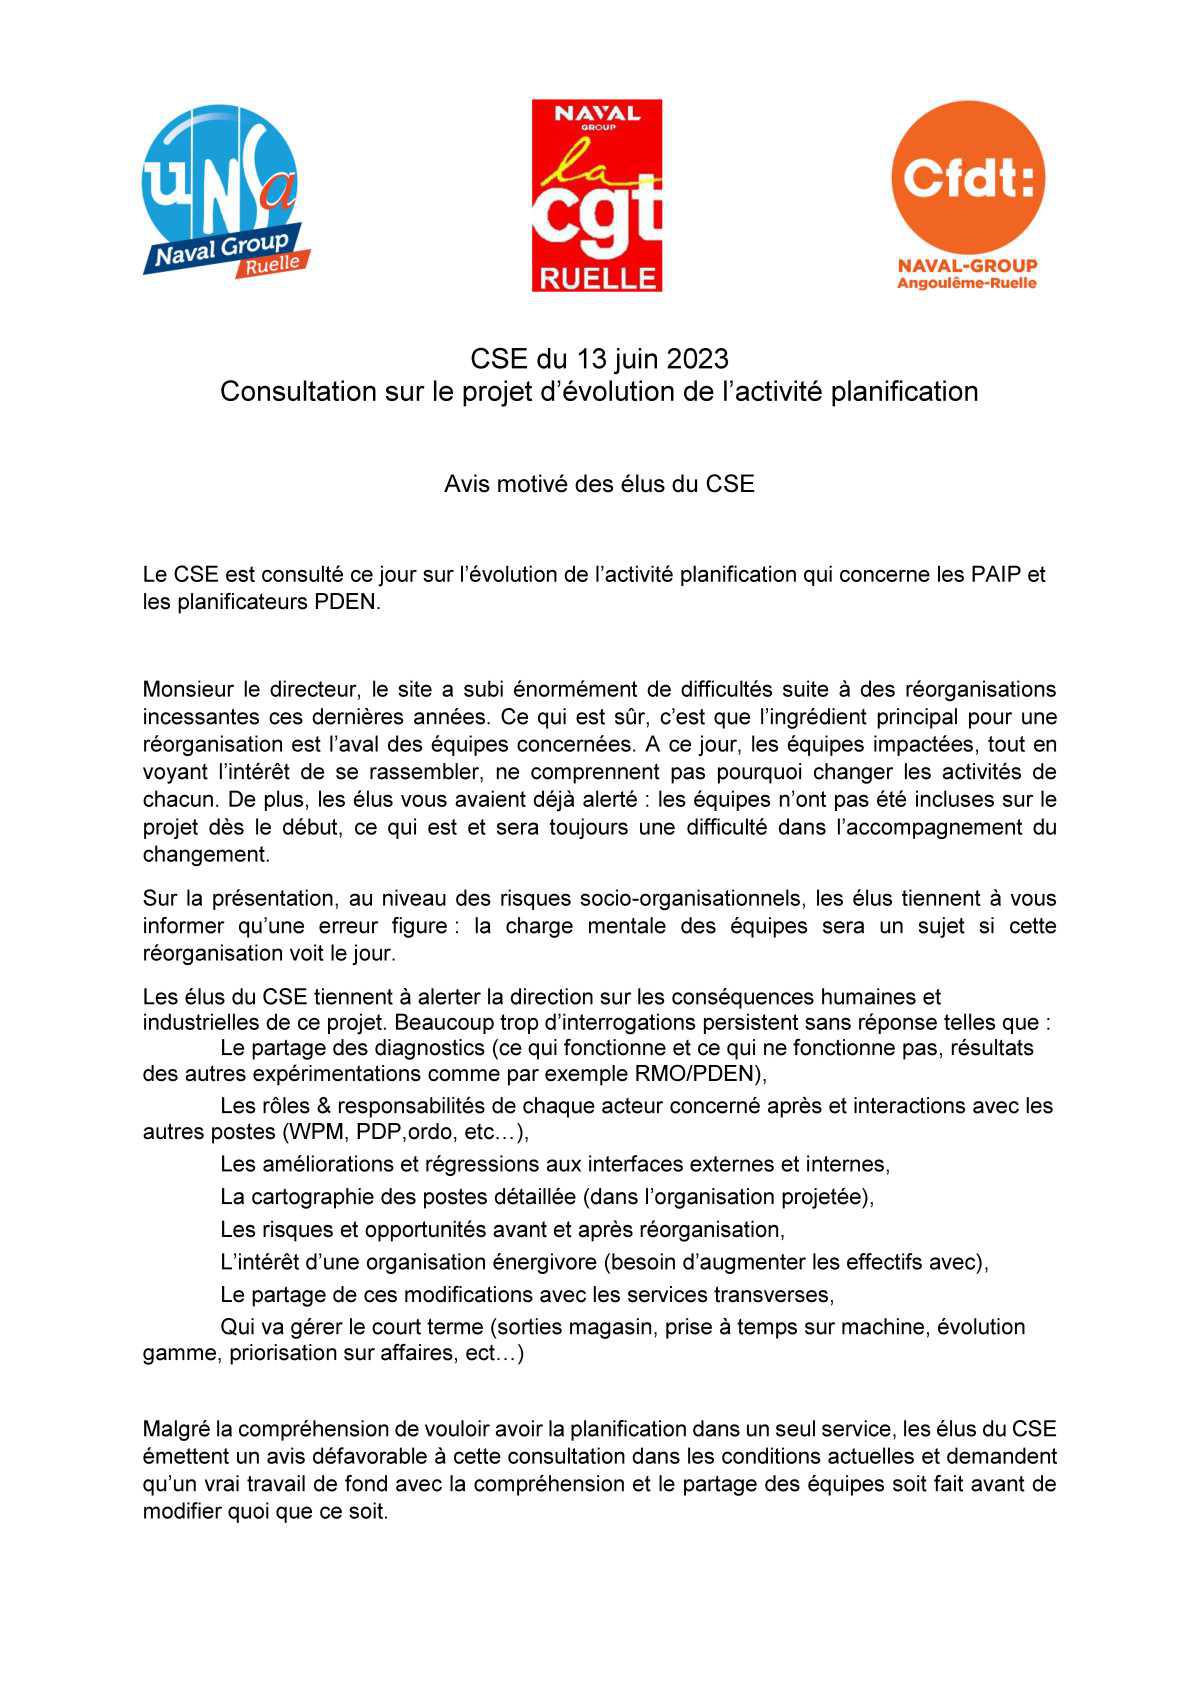 CSE de Ruelle - Réunion du 13 juin 2023 - Avis intersyndical